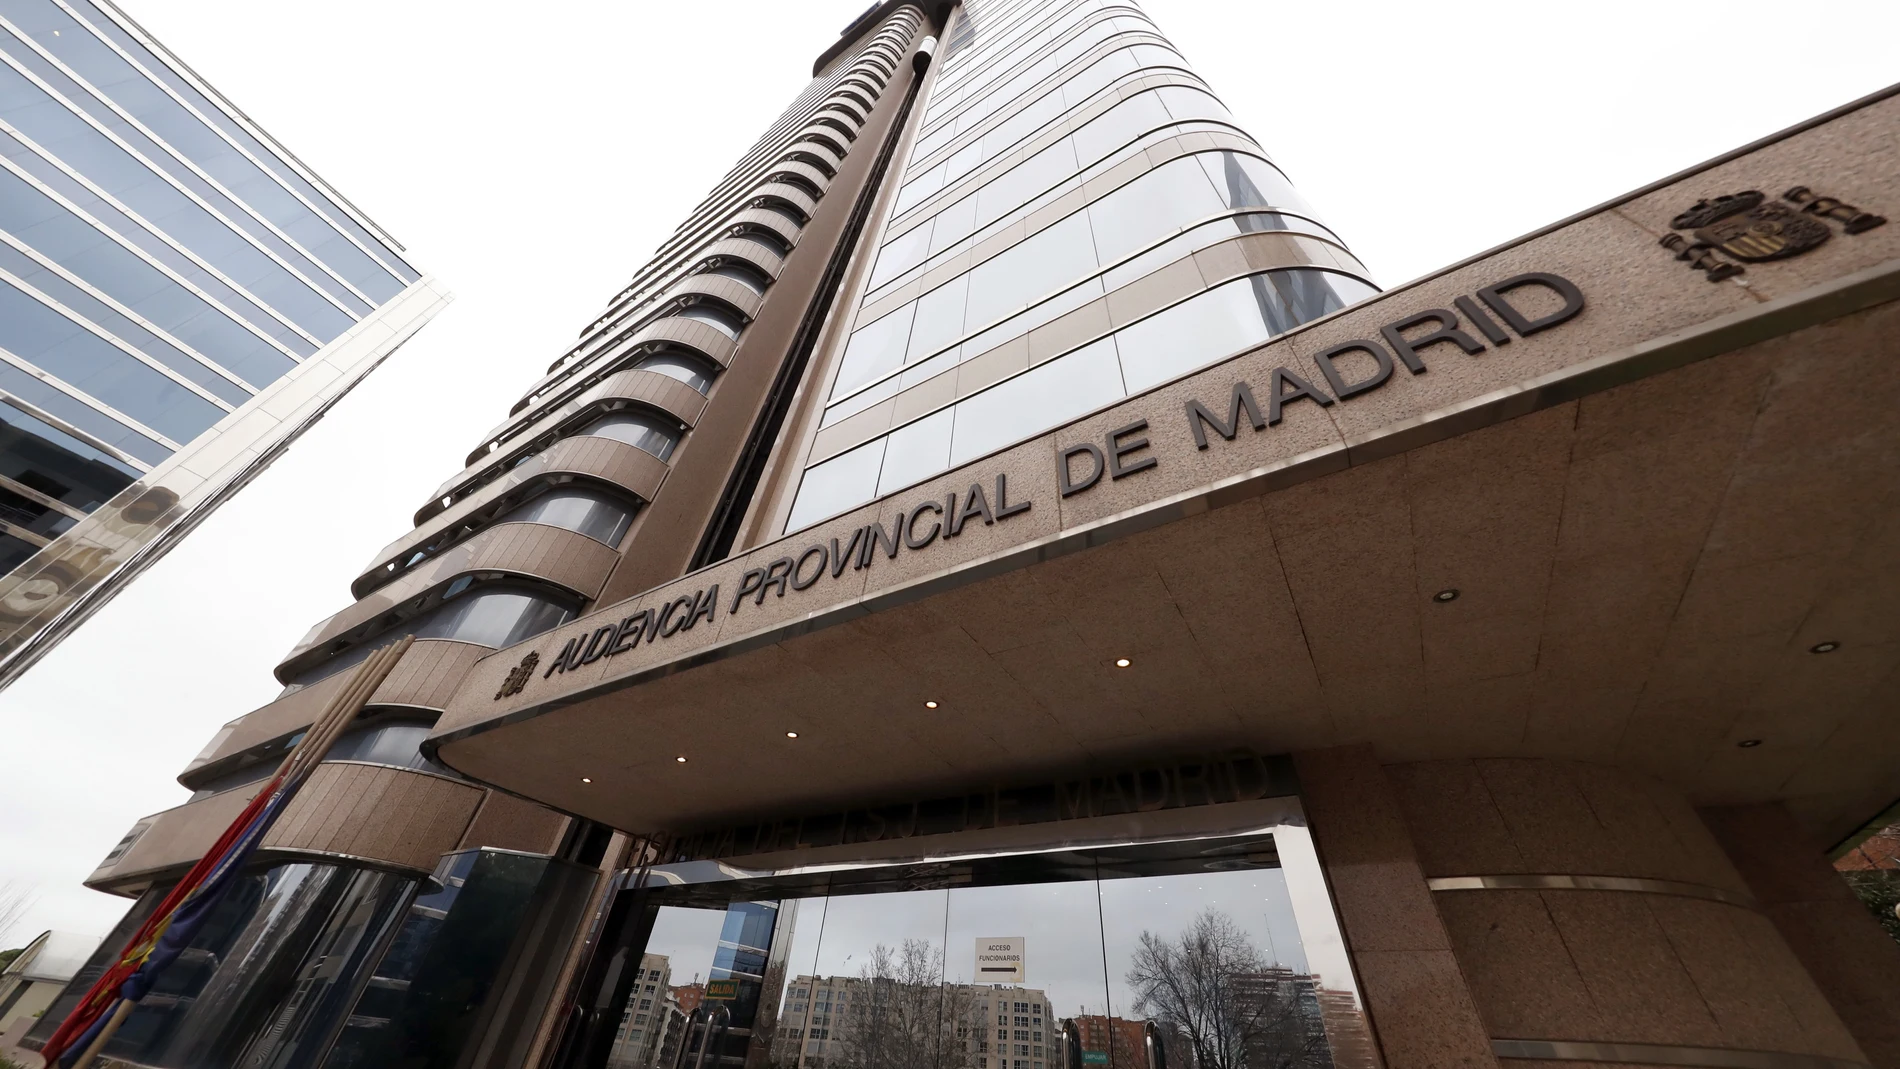 Fachada de la Audiencia Provincial de Madrid.